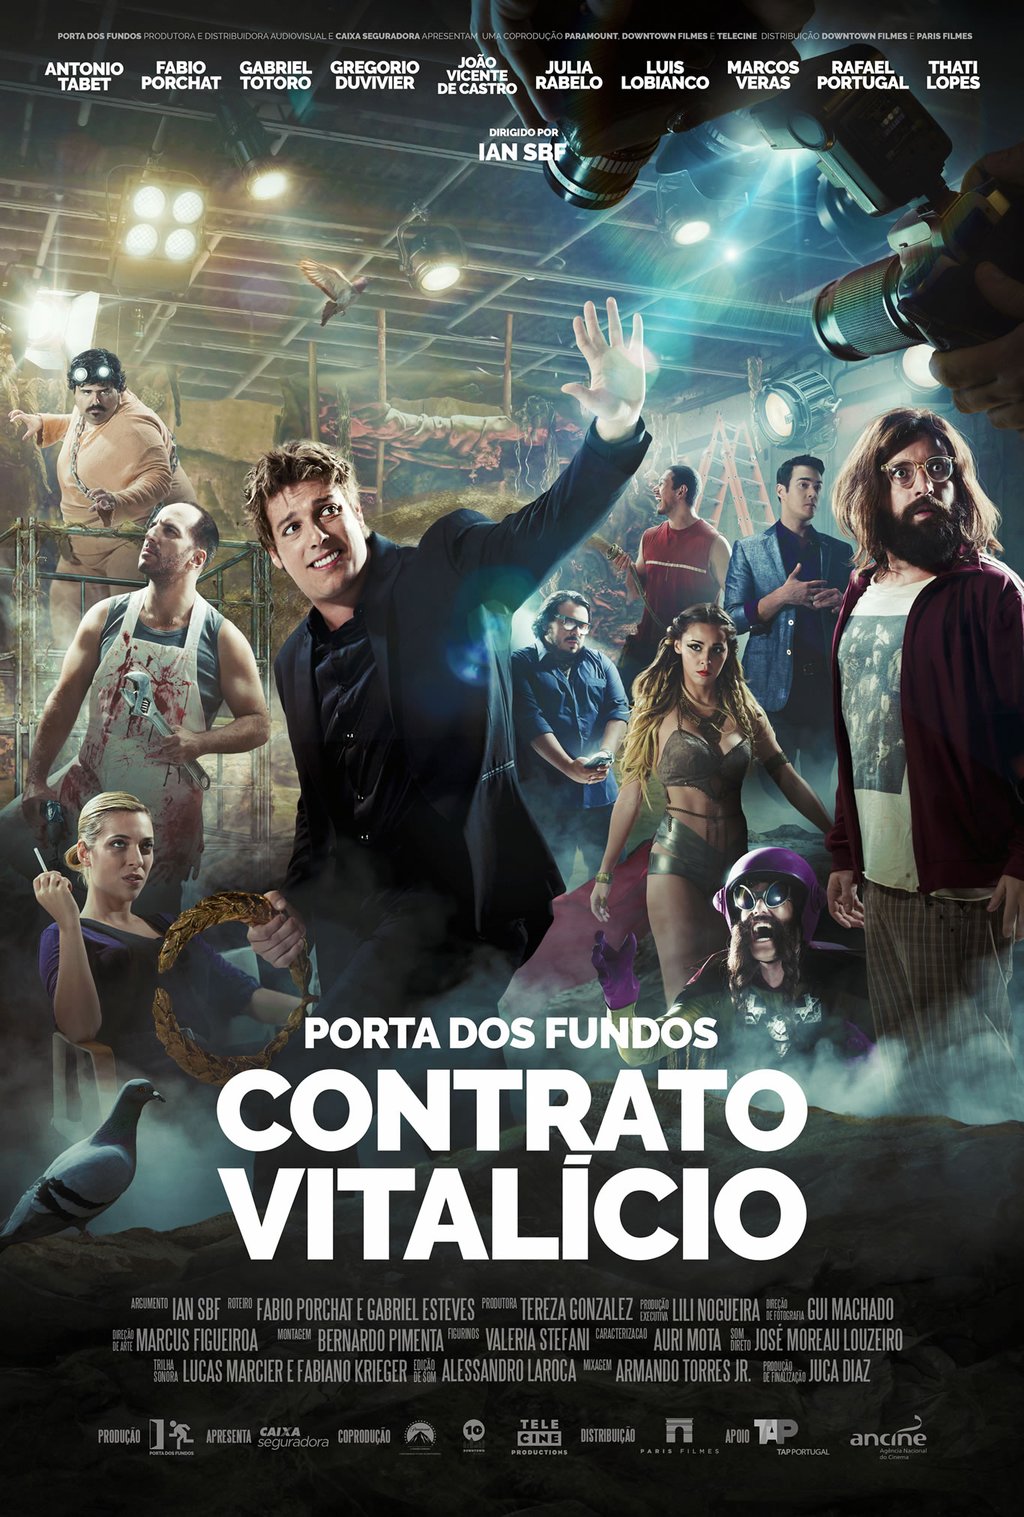 Porta Dos Fundos: Contrato Vitalício (2016) Main Poster